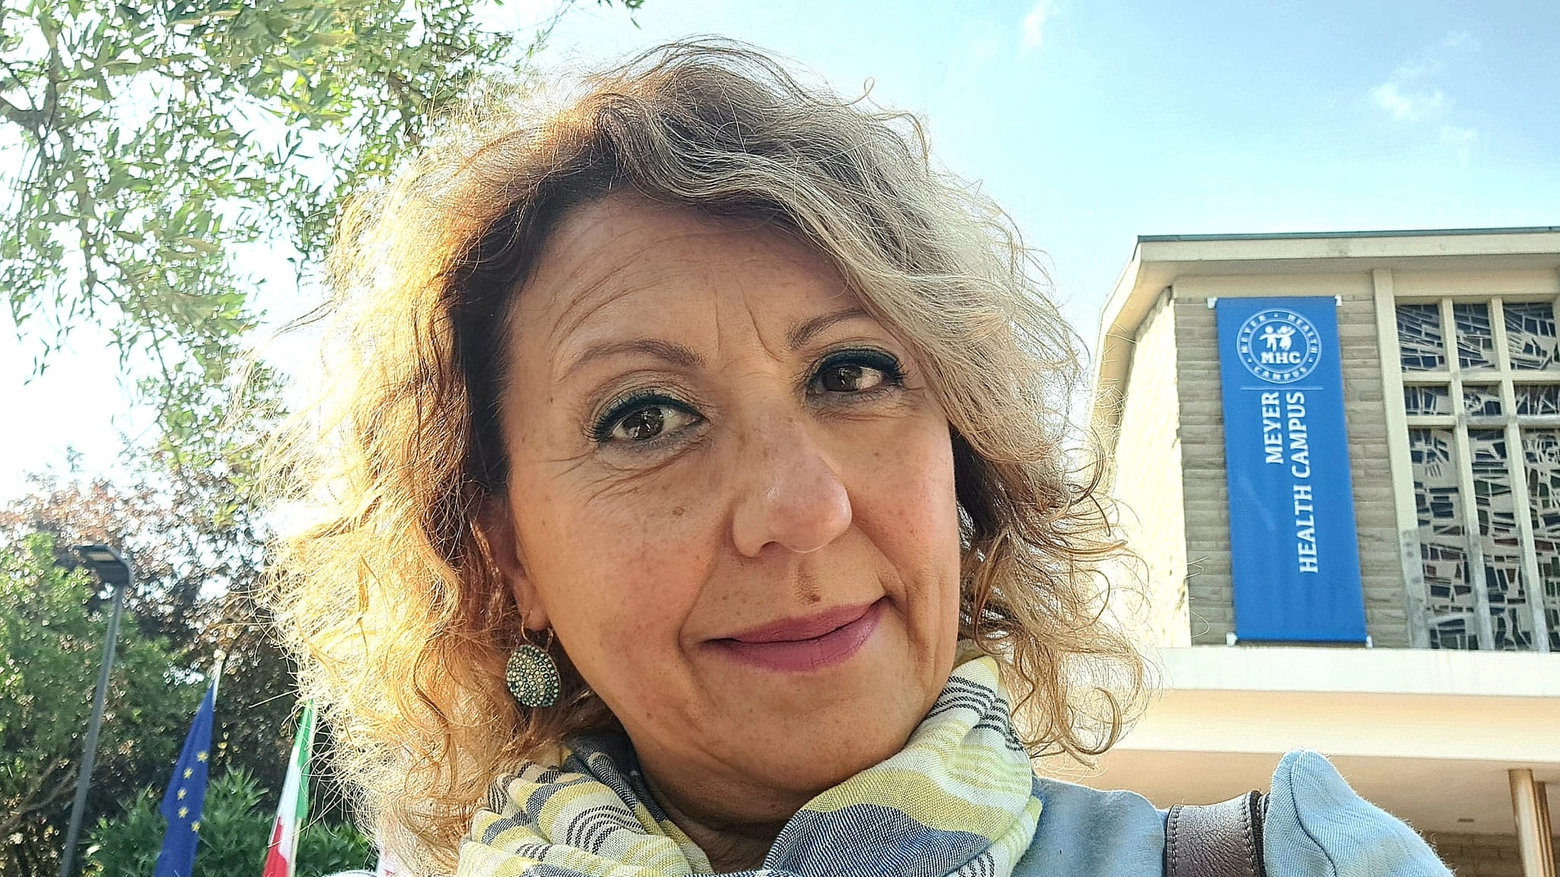 La presidente dell’Ordine degli psicologi della Toscana, Maria Antonietta Gulino, fa il punto sulla sperimentazione nelle case di comunità avviata in alcune Regioni. “Manca personale nel servizio pubblico. Per una prima diagnosi bastano 3/5 sedute”